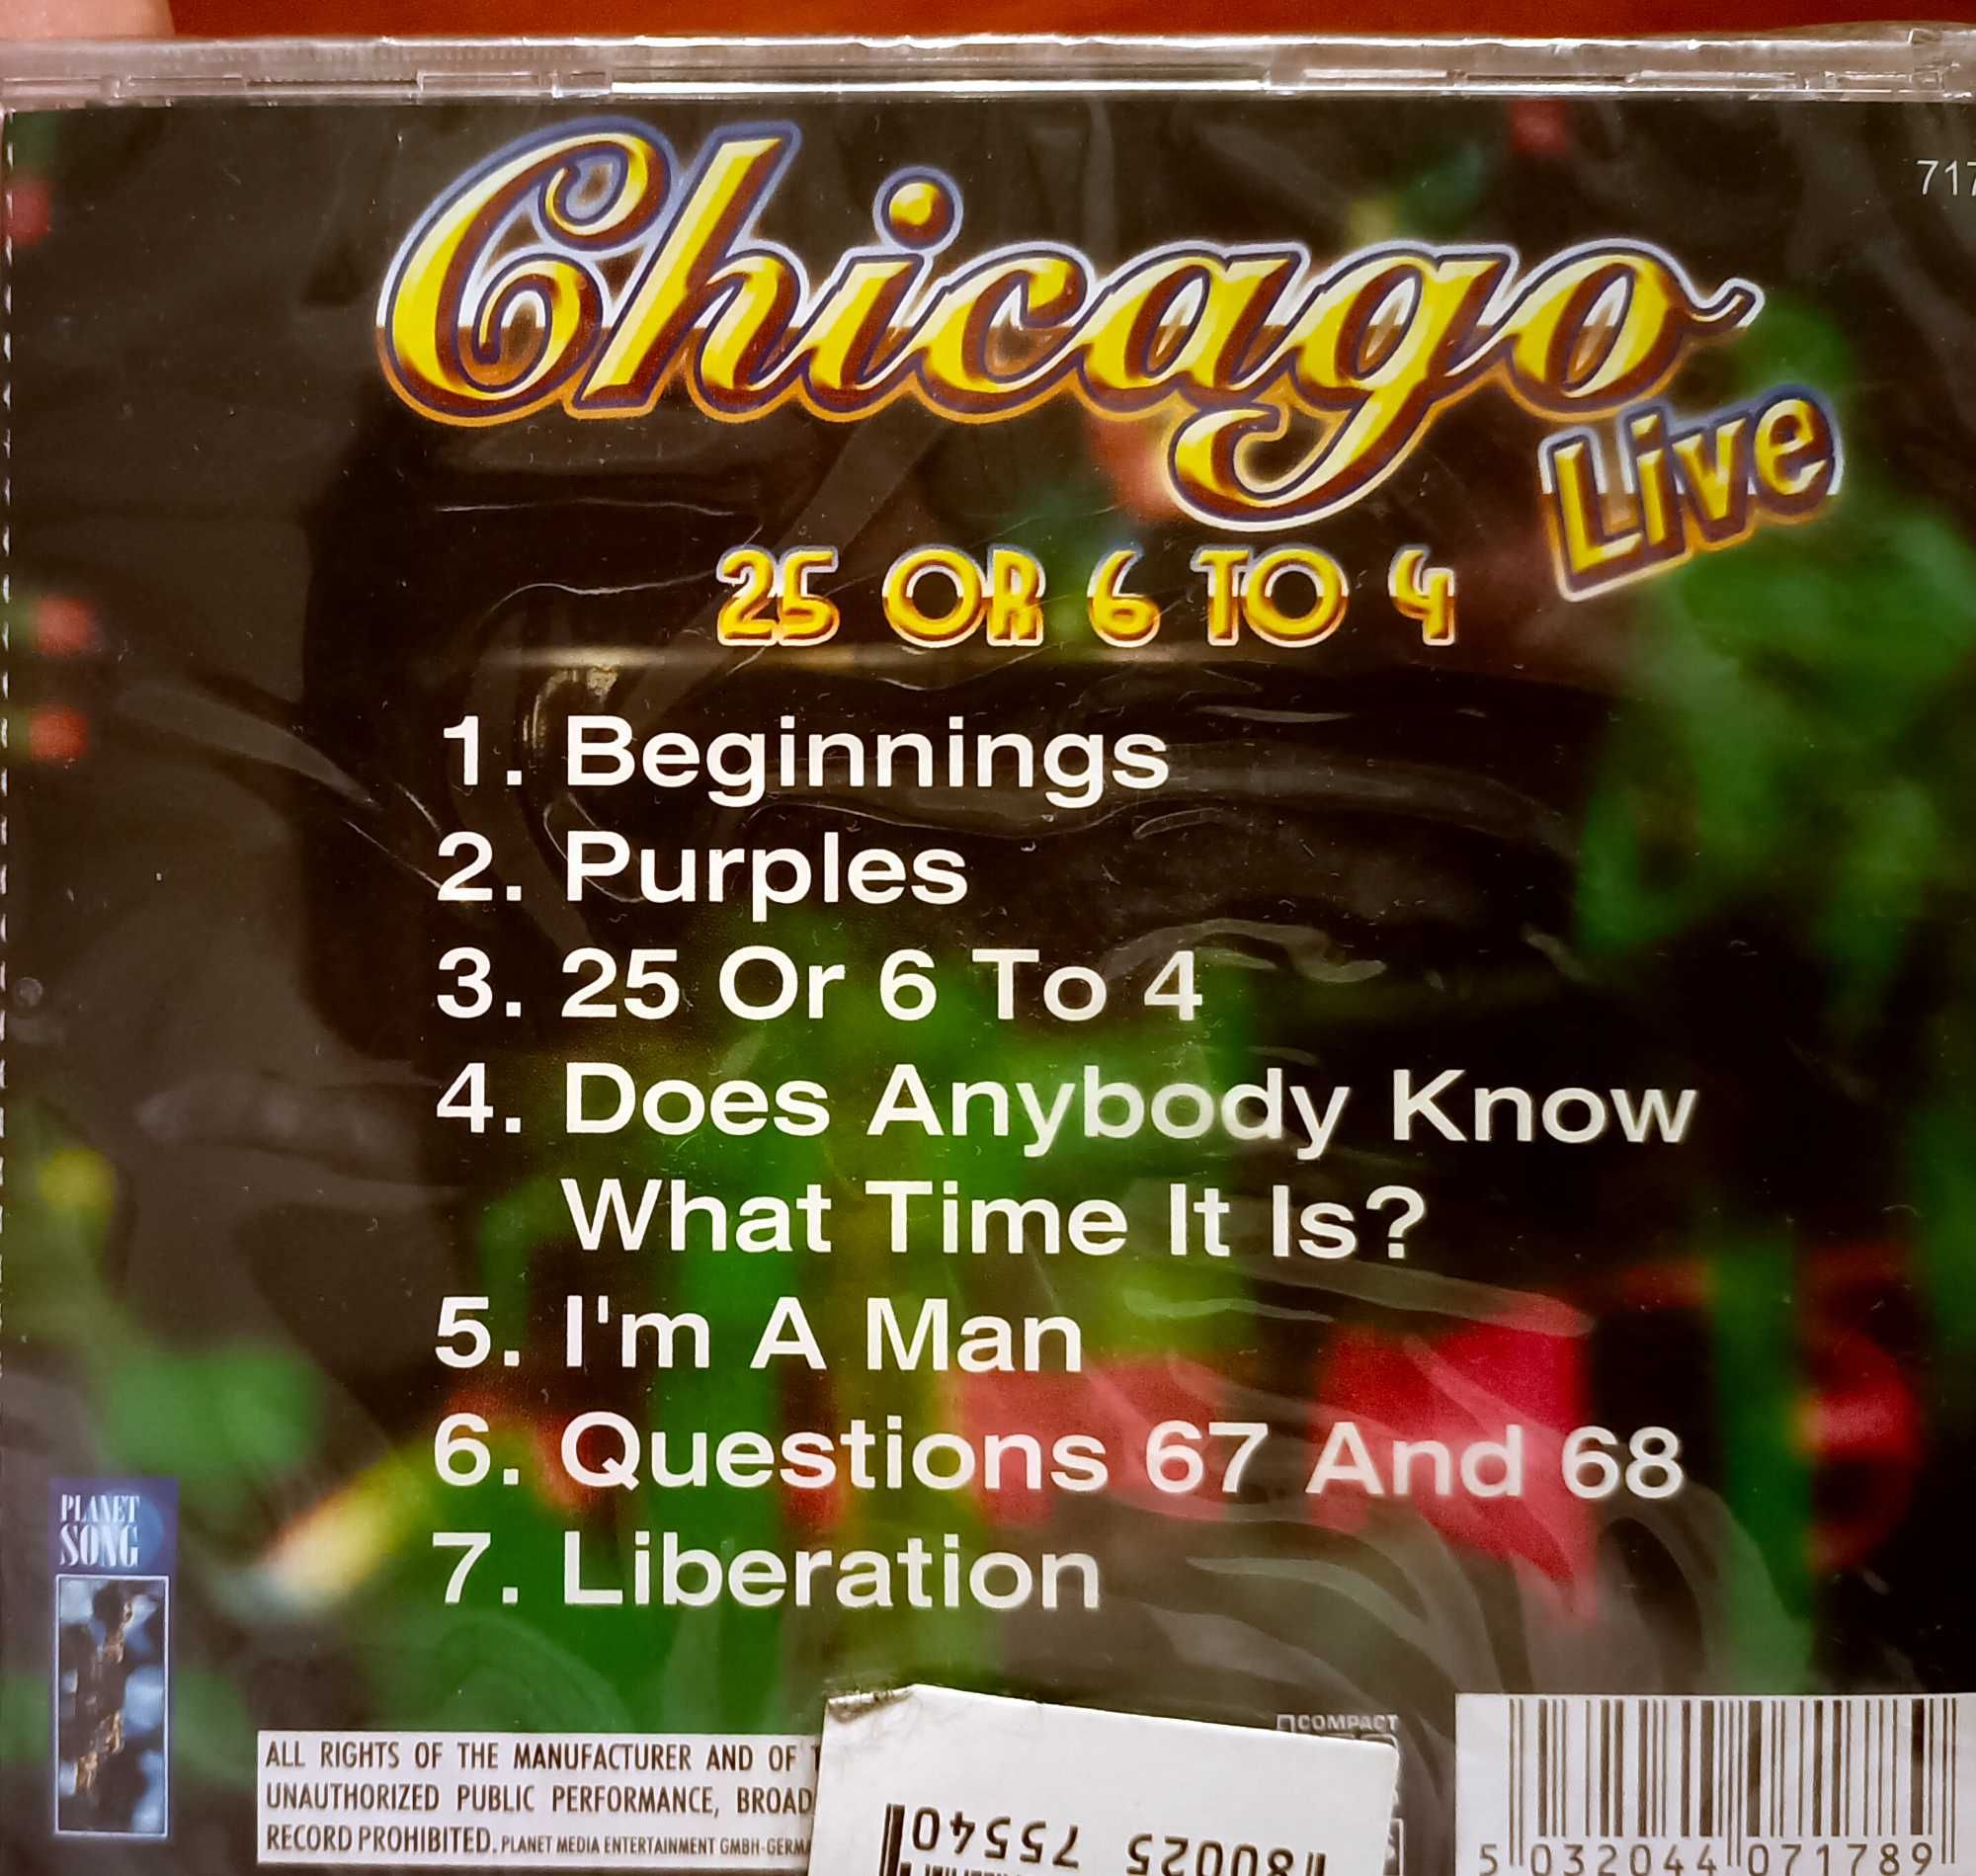 płyta cd chicago live 25 or 6 to 4 w folii